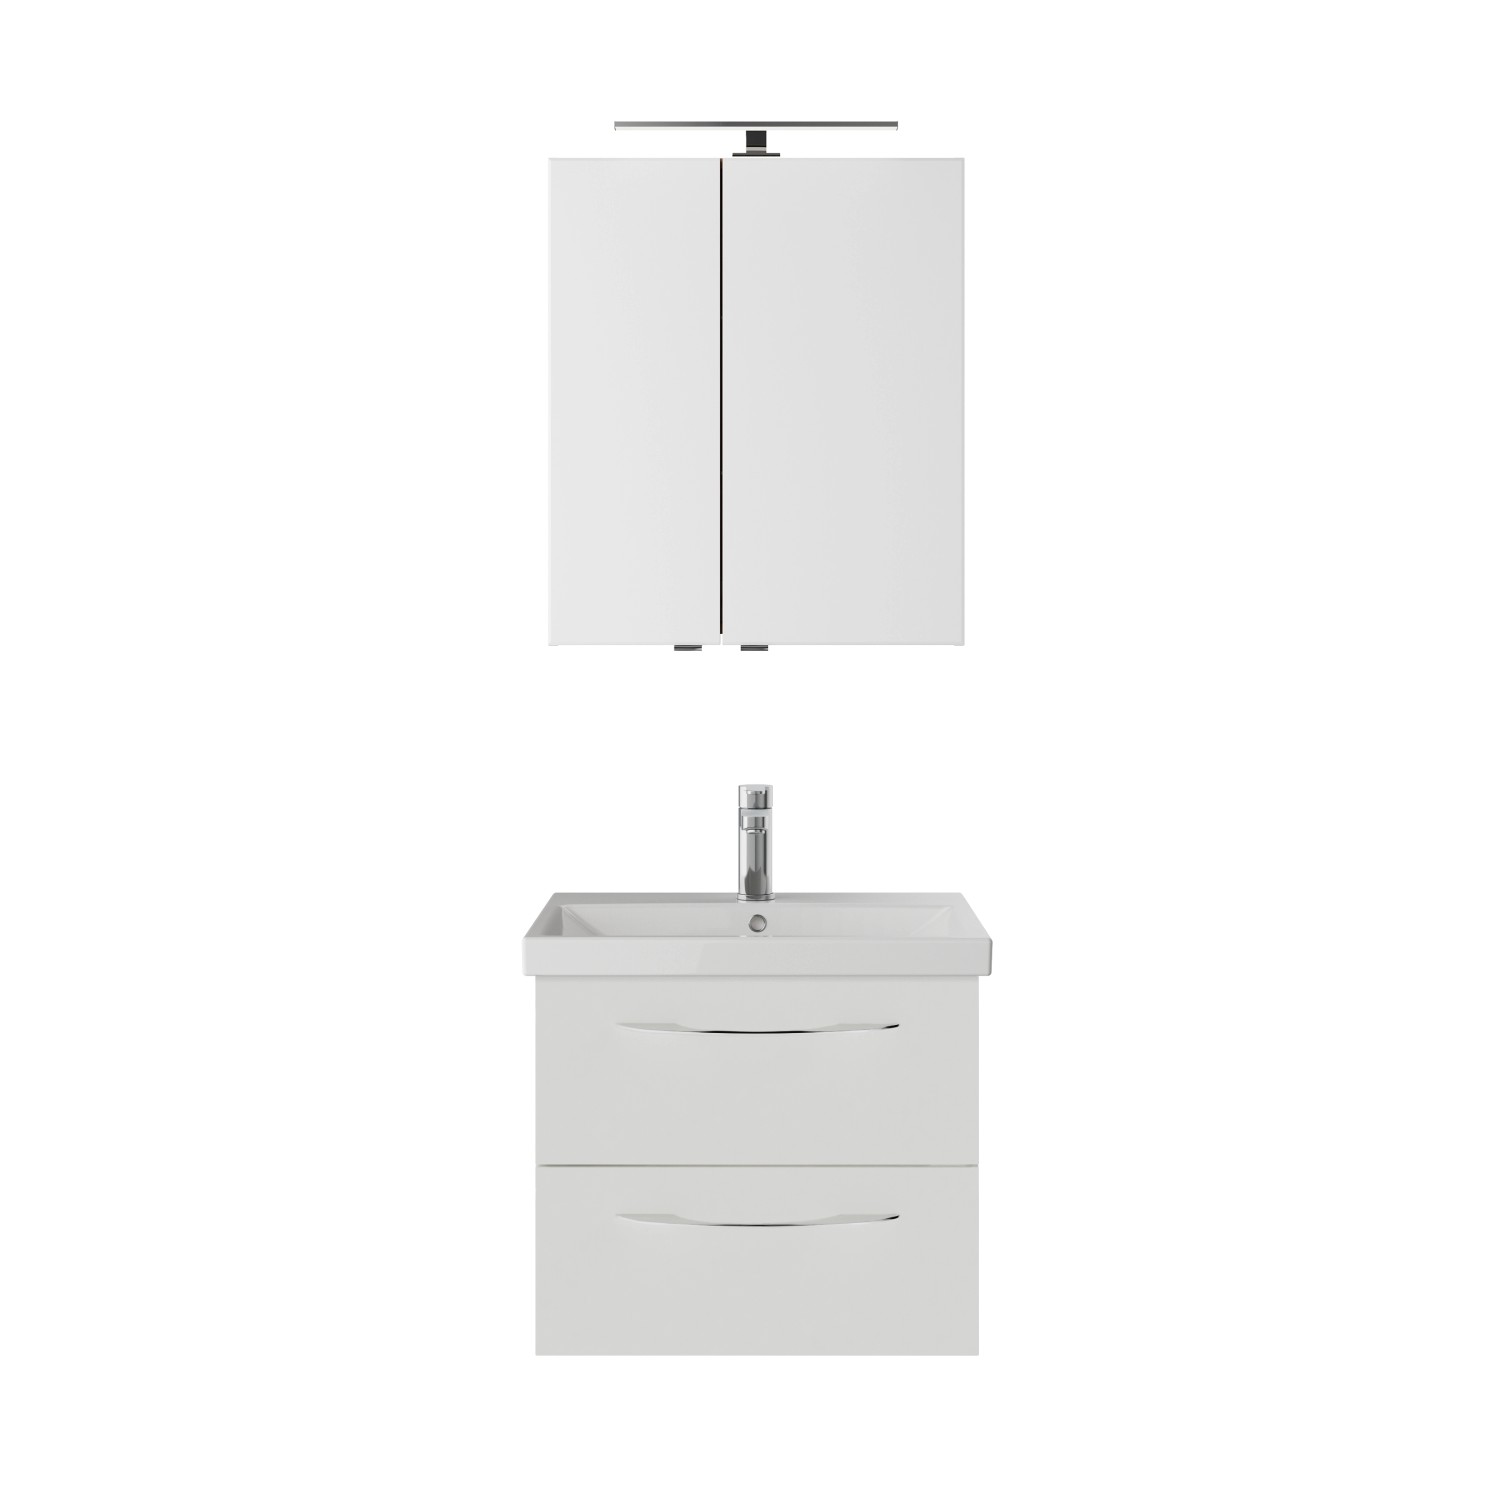 Pelipal Badmöbel-Set Serie 4035 3-teilig in Weiß Glanz mit Spiegelschrank